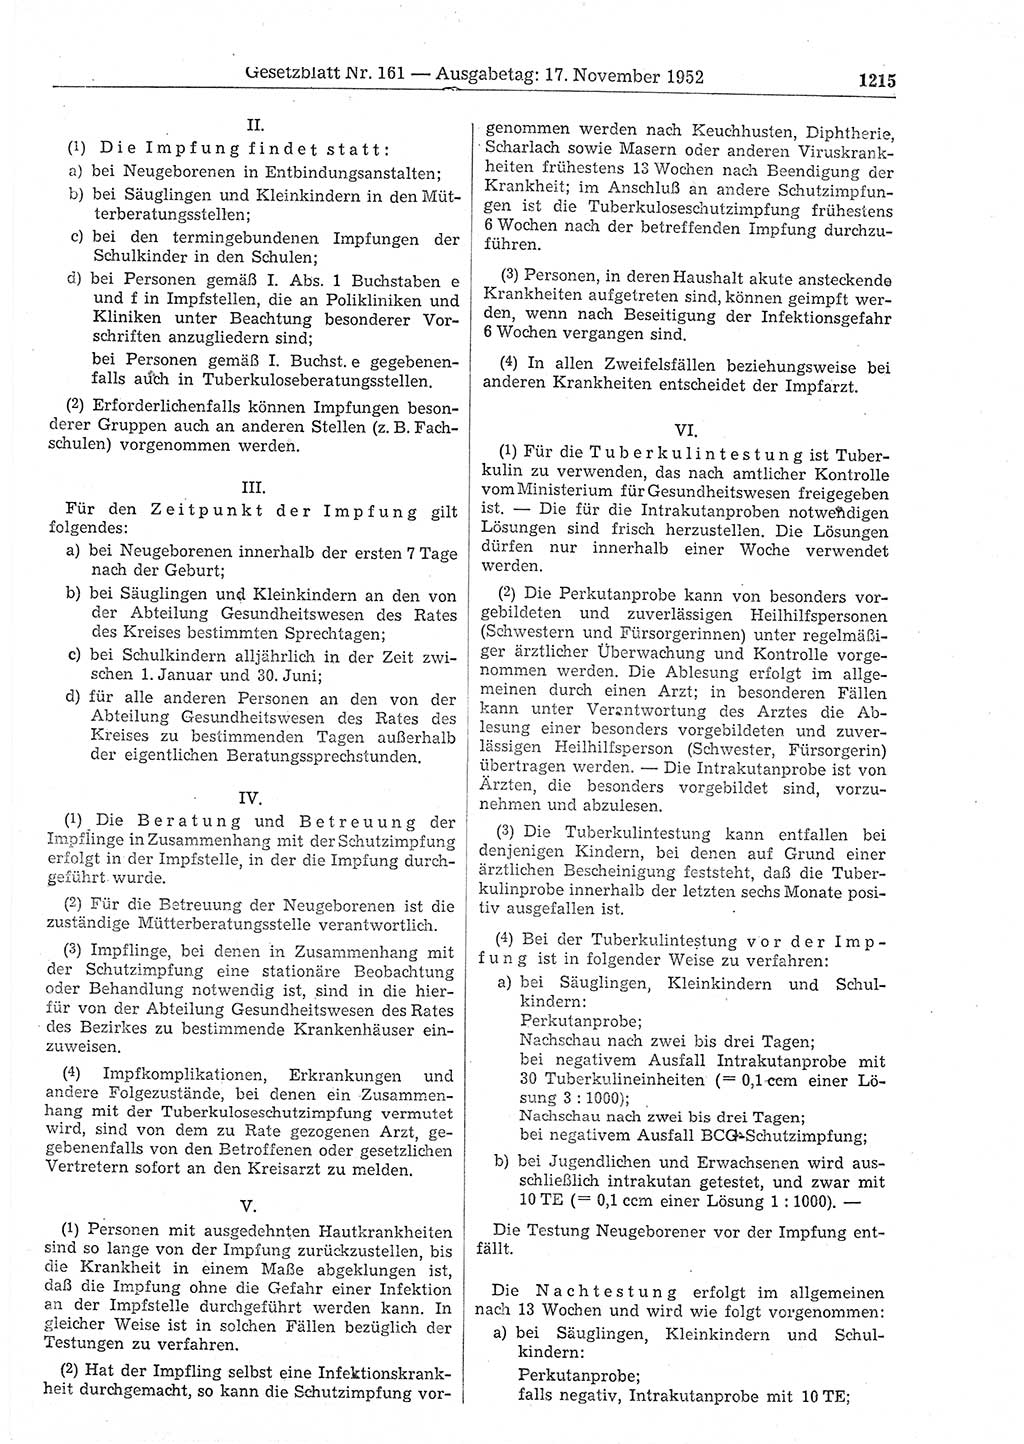 Gesetzblatt (GBl.) der Deutschen Demokratischen Republik (DDR) 1952, Seite 1215 (GBl. DDR 1952, S. 1215)